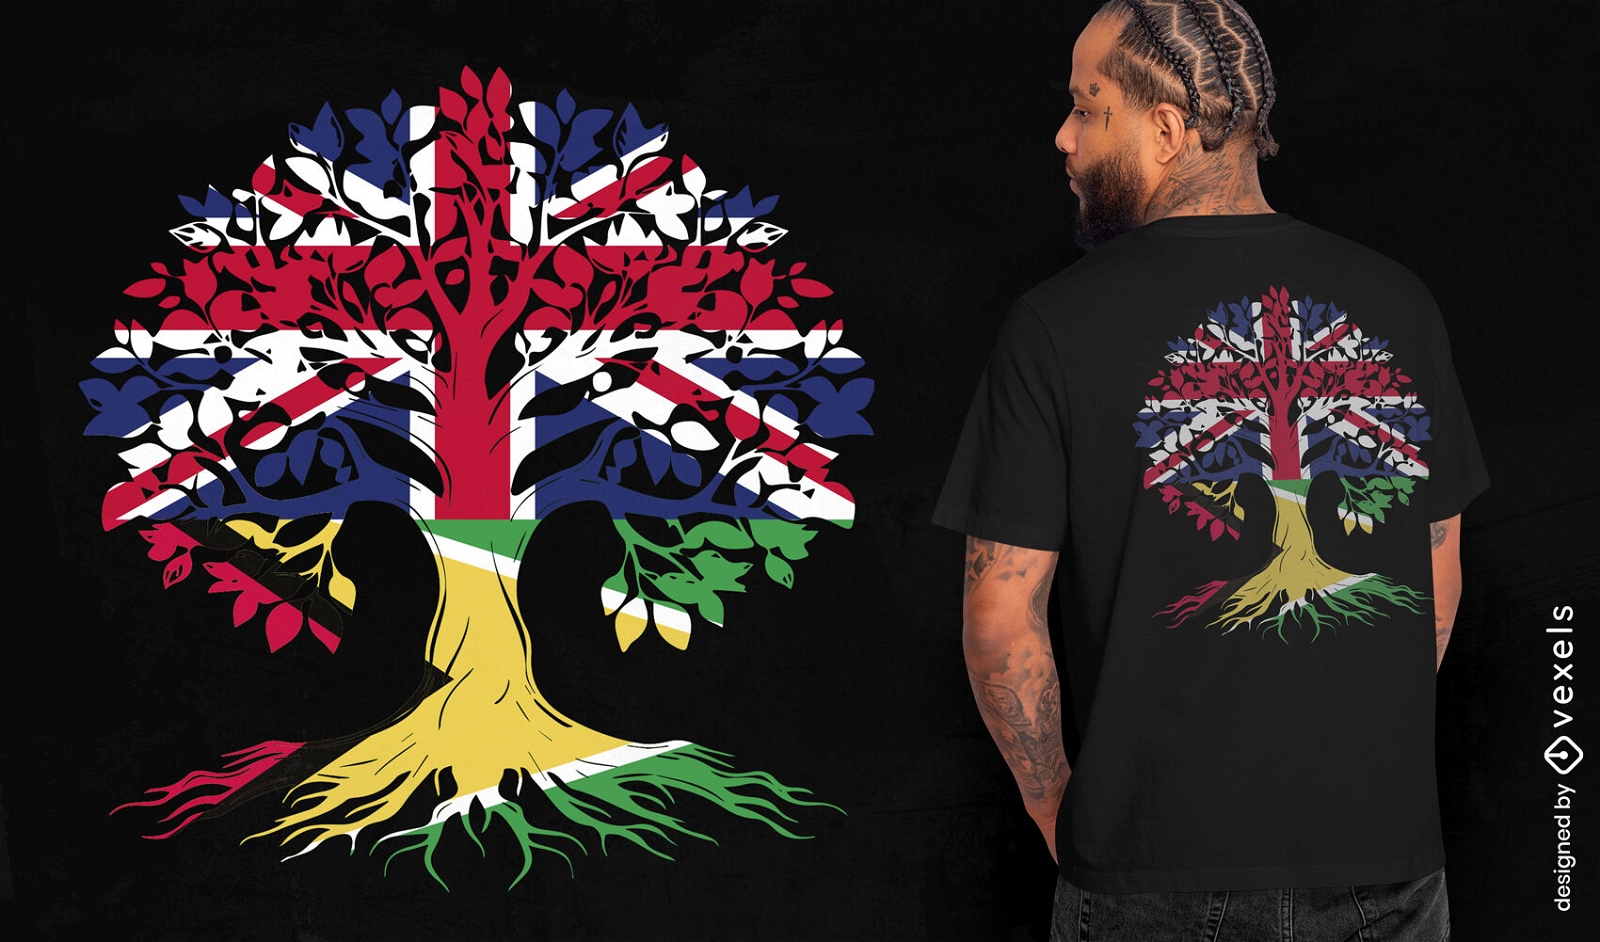 SOLICITE o design de uma camiseta com árvore no Reino Unido